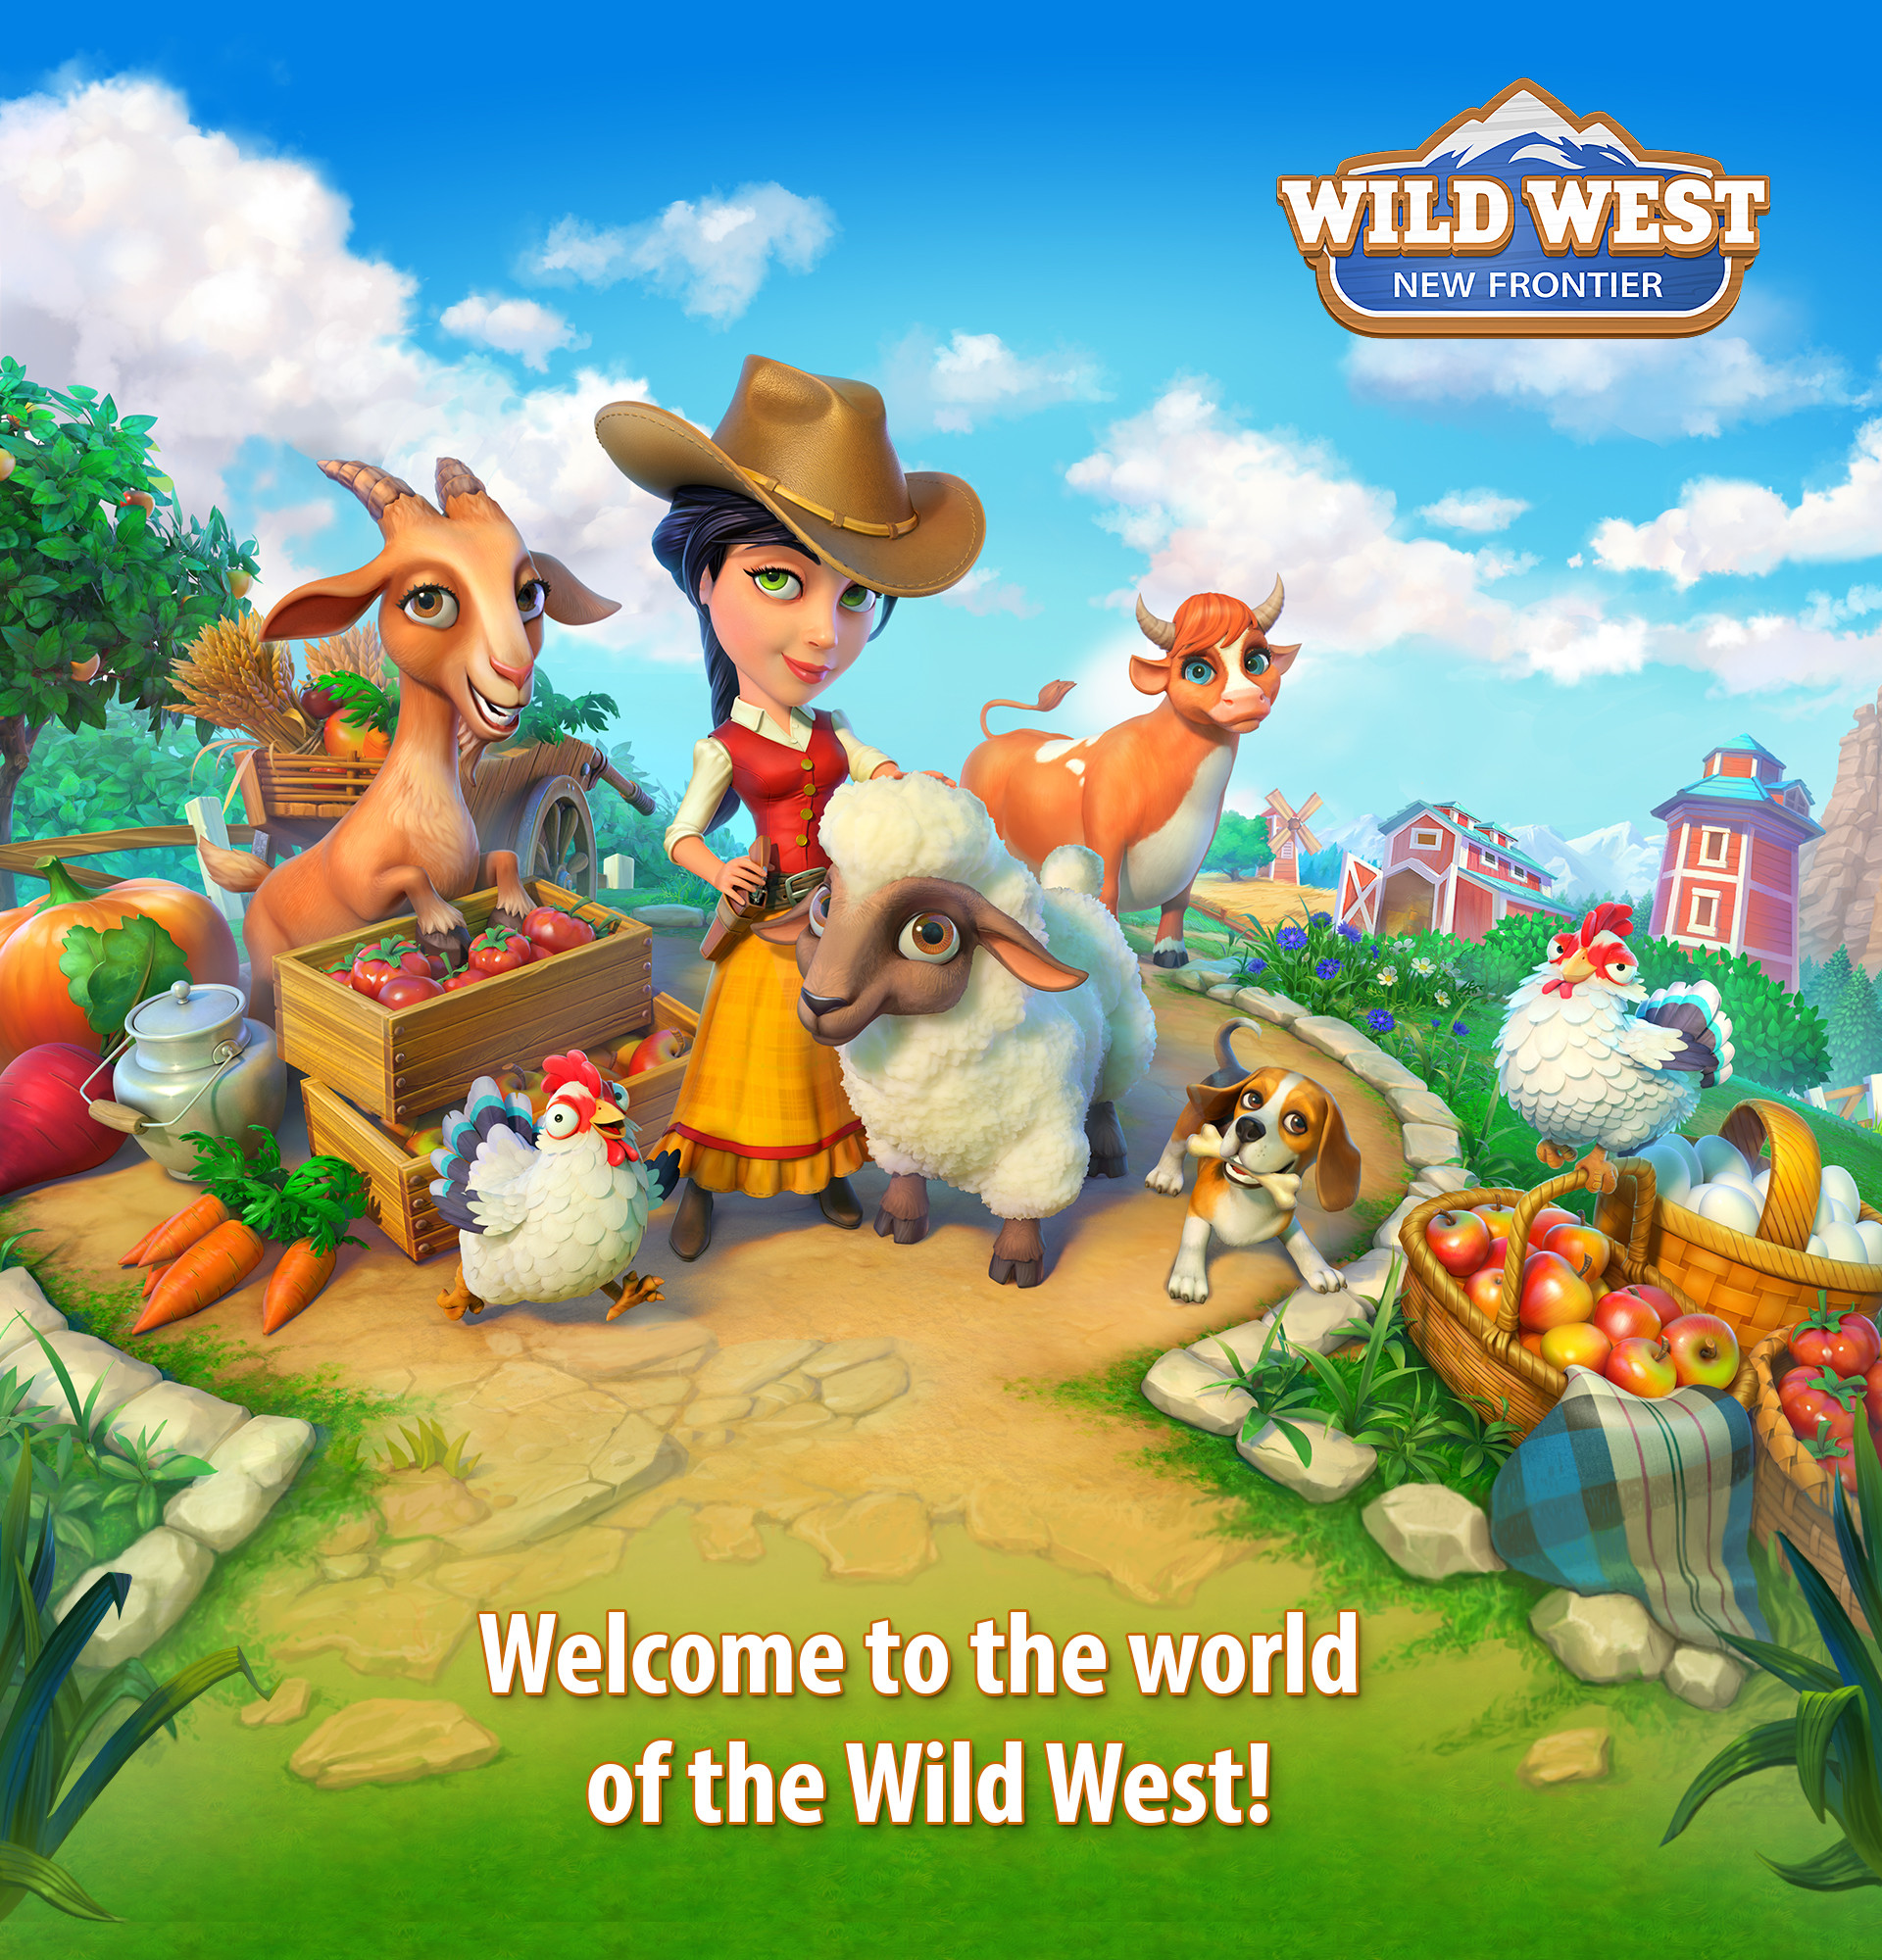 Игра дикая ферма. Вилд Вест ферма. Wild West игра ферма. Wild West: New Frontier. Цщдв цуые пфьу туц акщтешук.